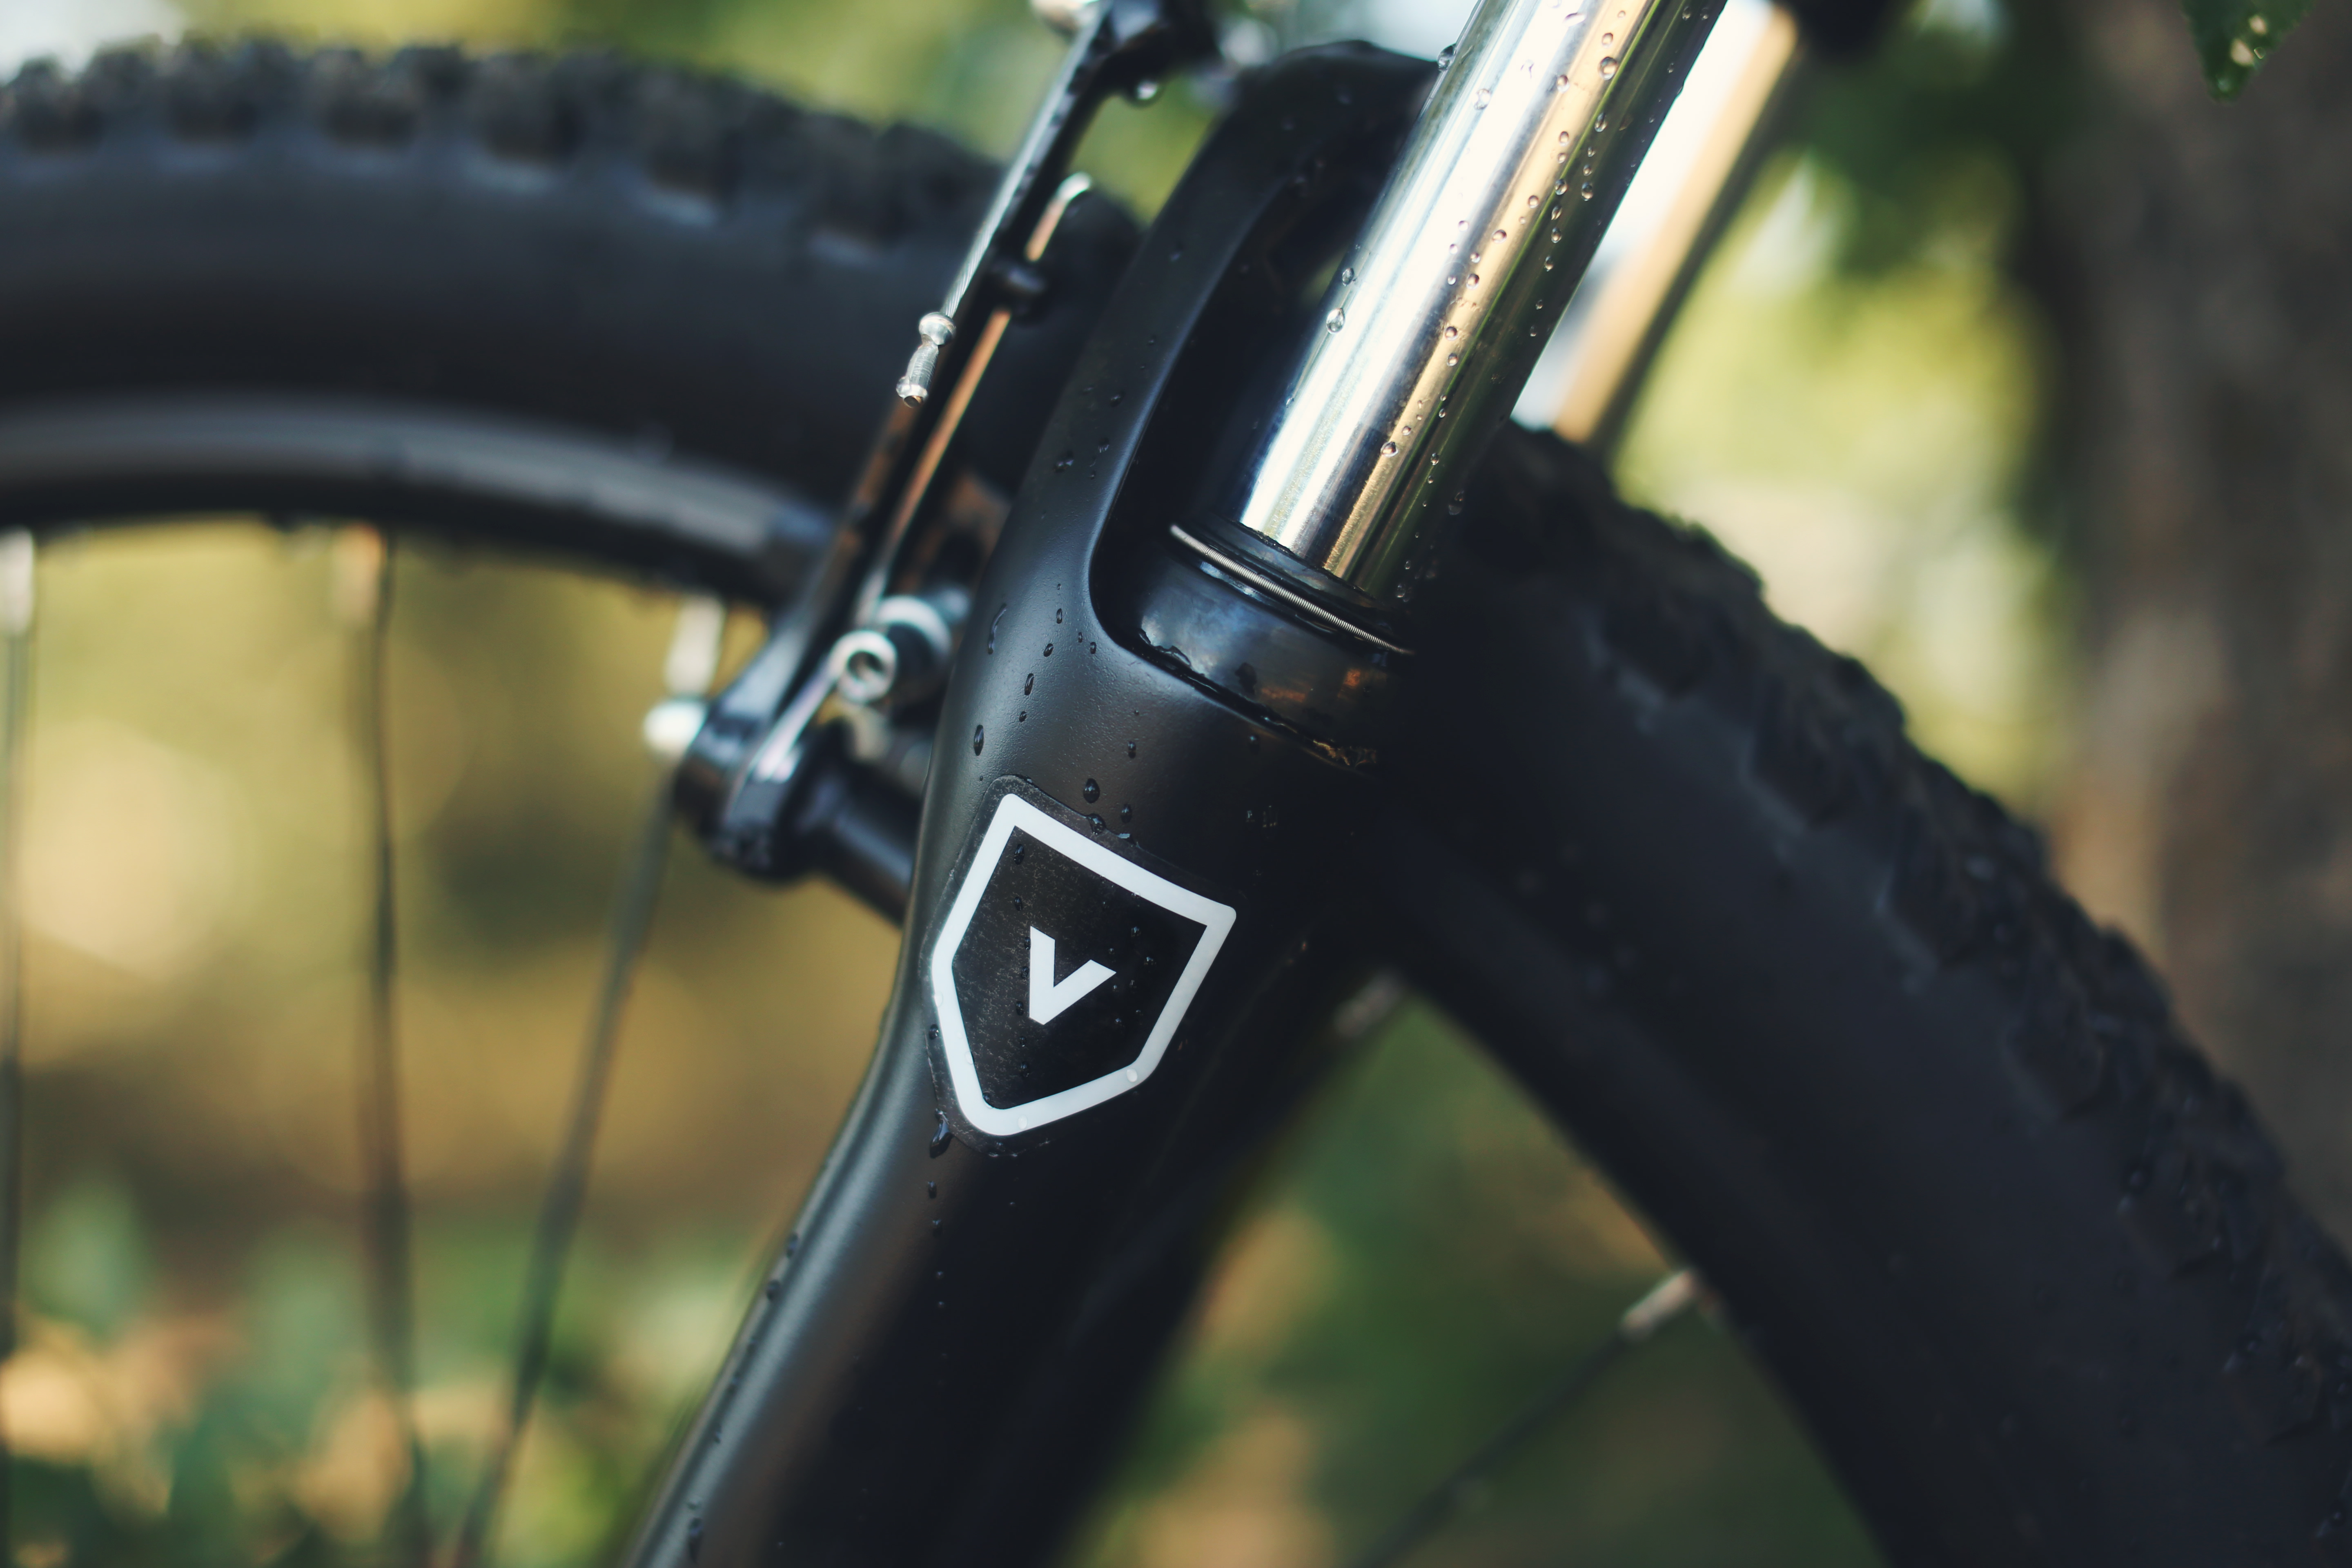 sticker transparent avec de l'encre blanche sur un vélo noir